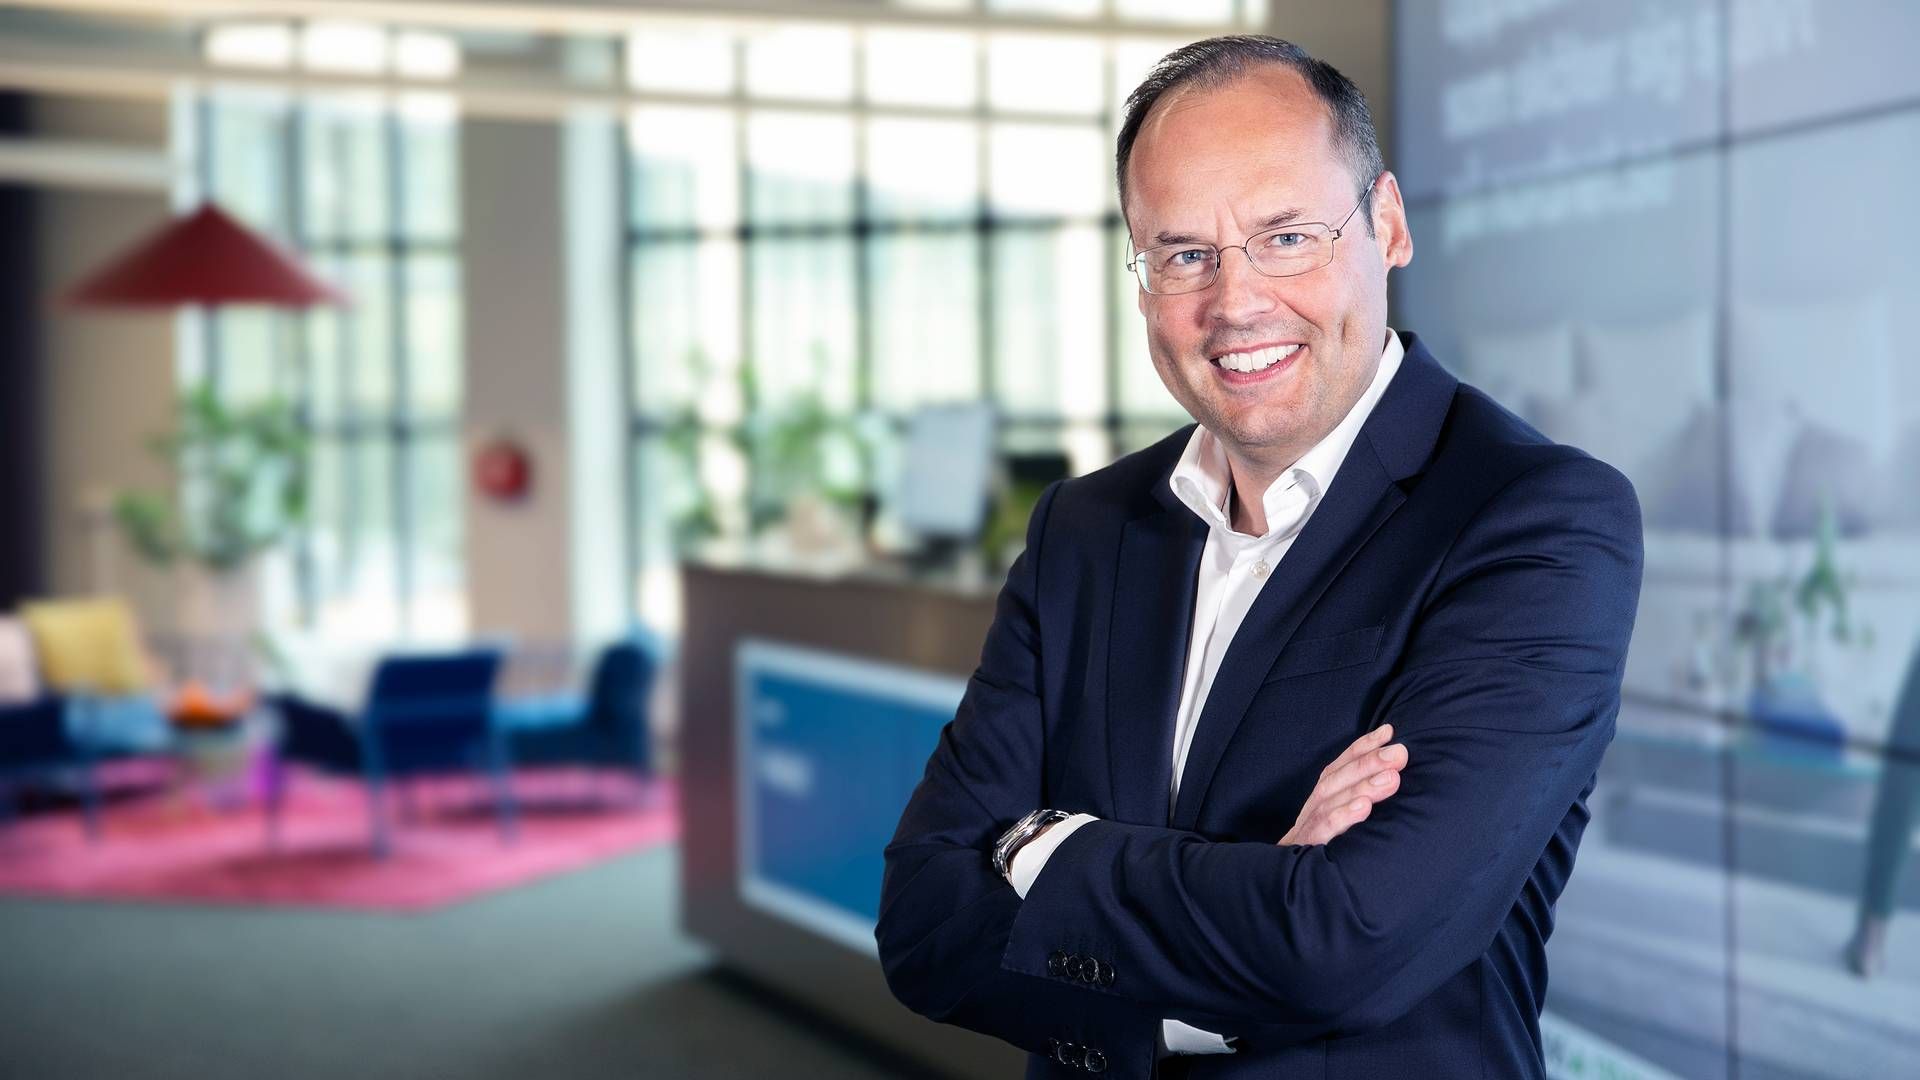 Lars-Åke Norling, CEO of Nordnet | Photo: PR/Nordnet